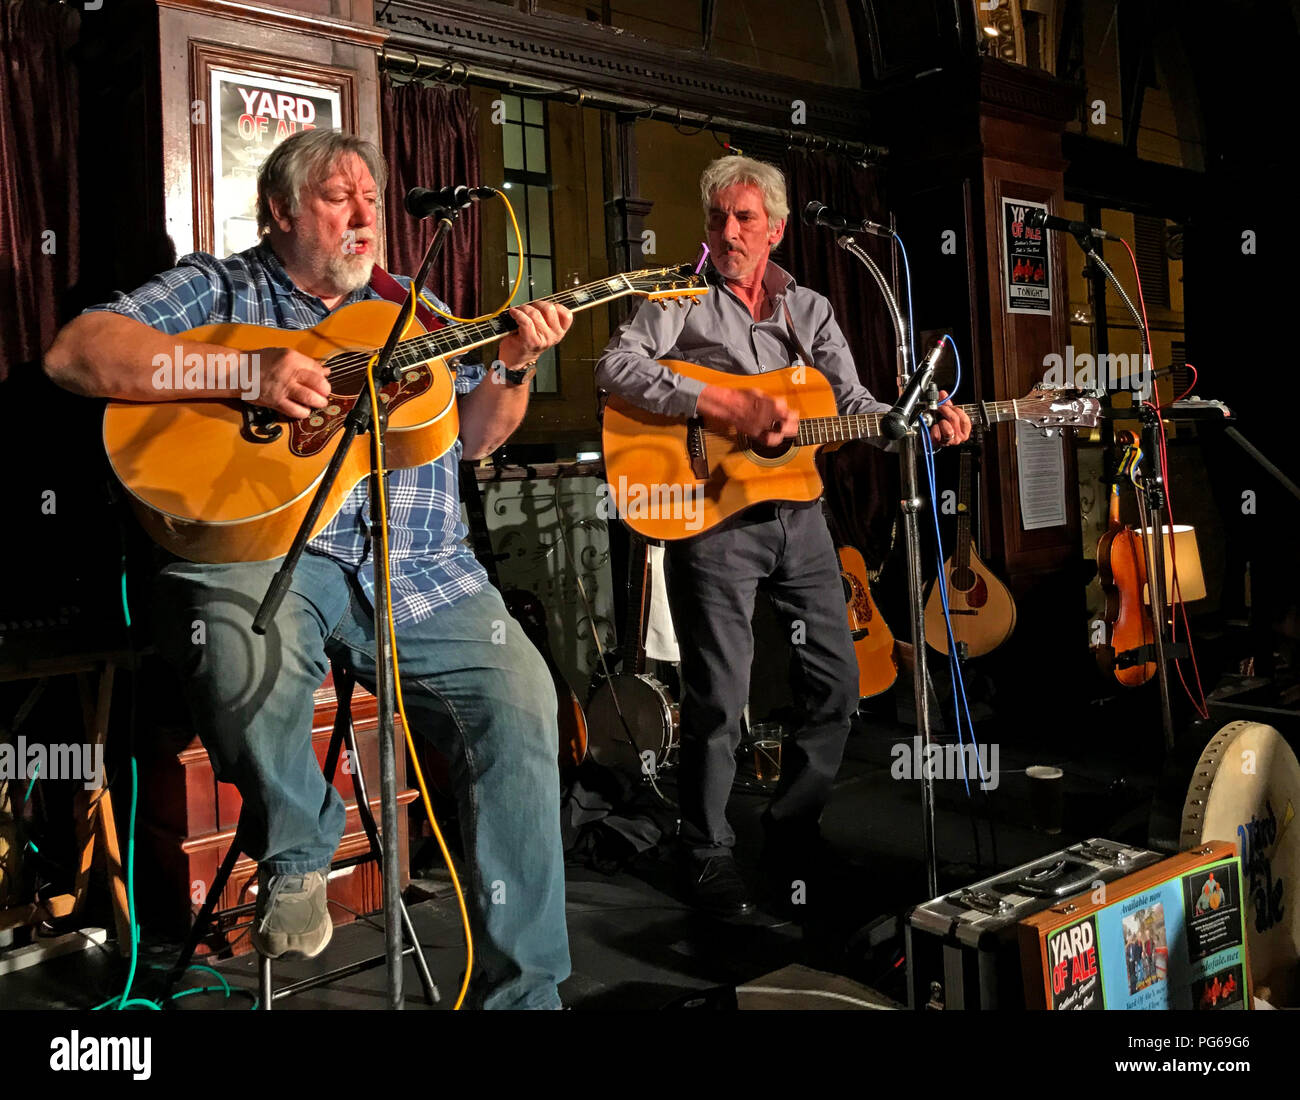 Cour de Ale, folk et blues band, jouer en live au bras de Guildford, registre de l'Ouest, le centre-ville d'Édimbourg, Écosse, Royaume-Uni Banque D'Images